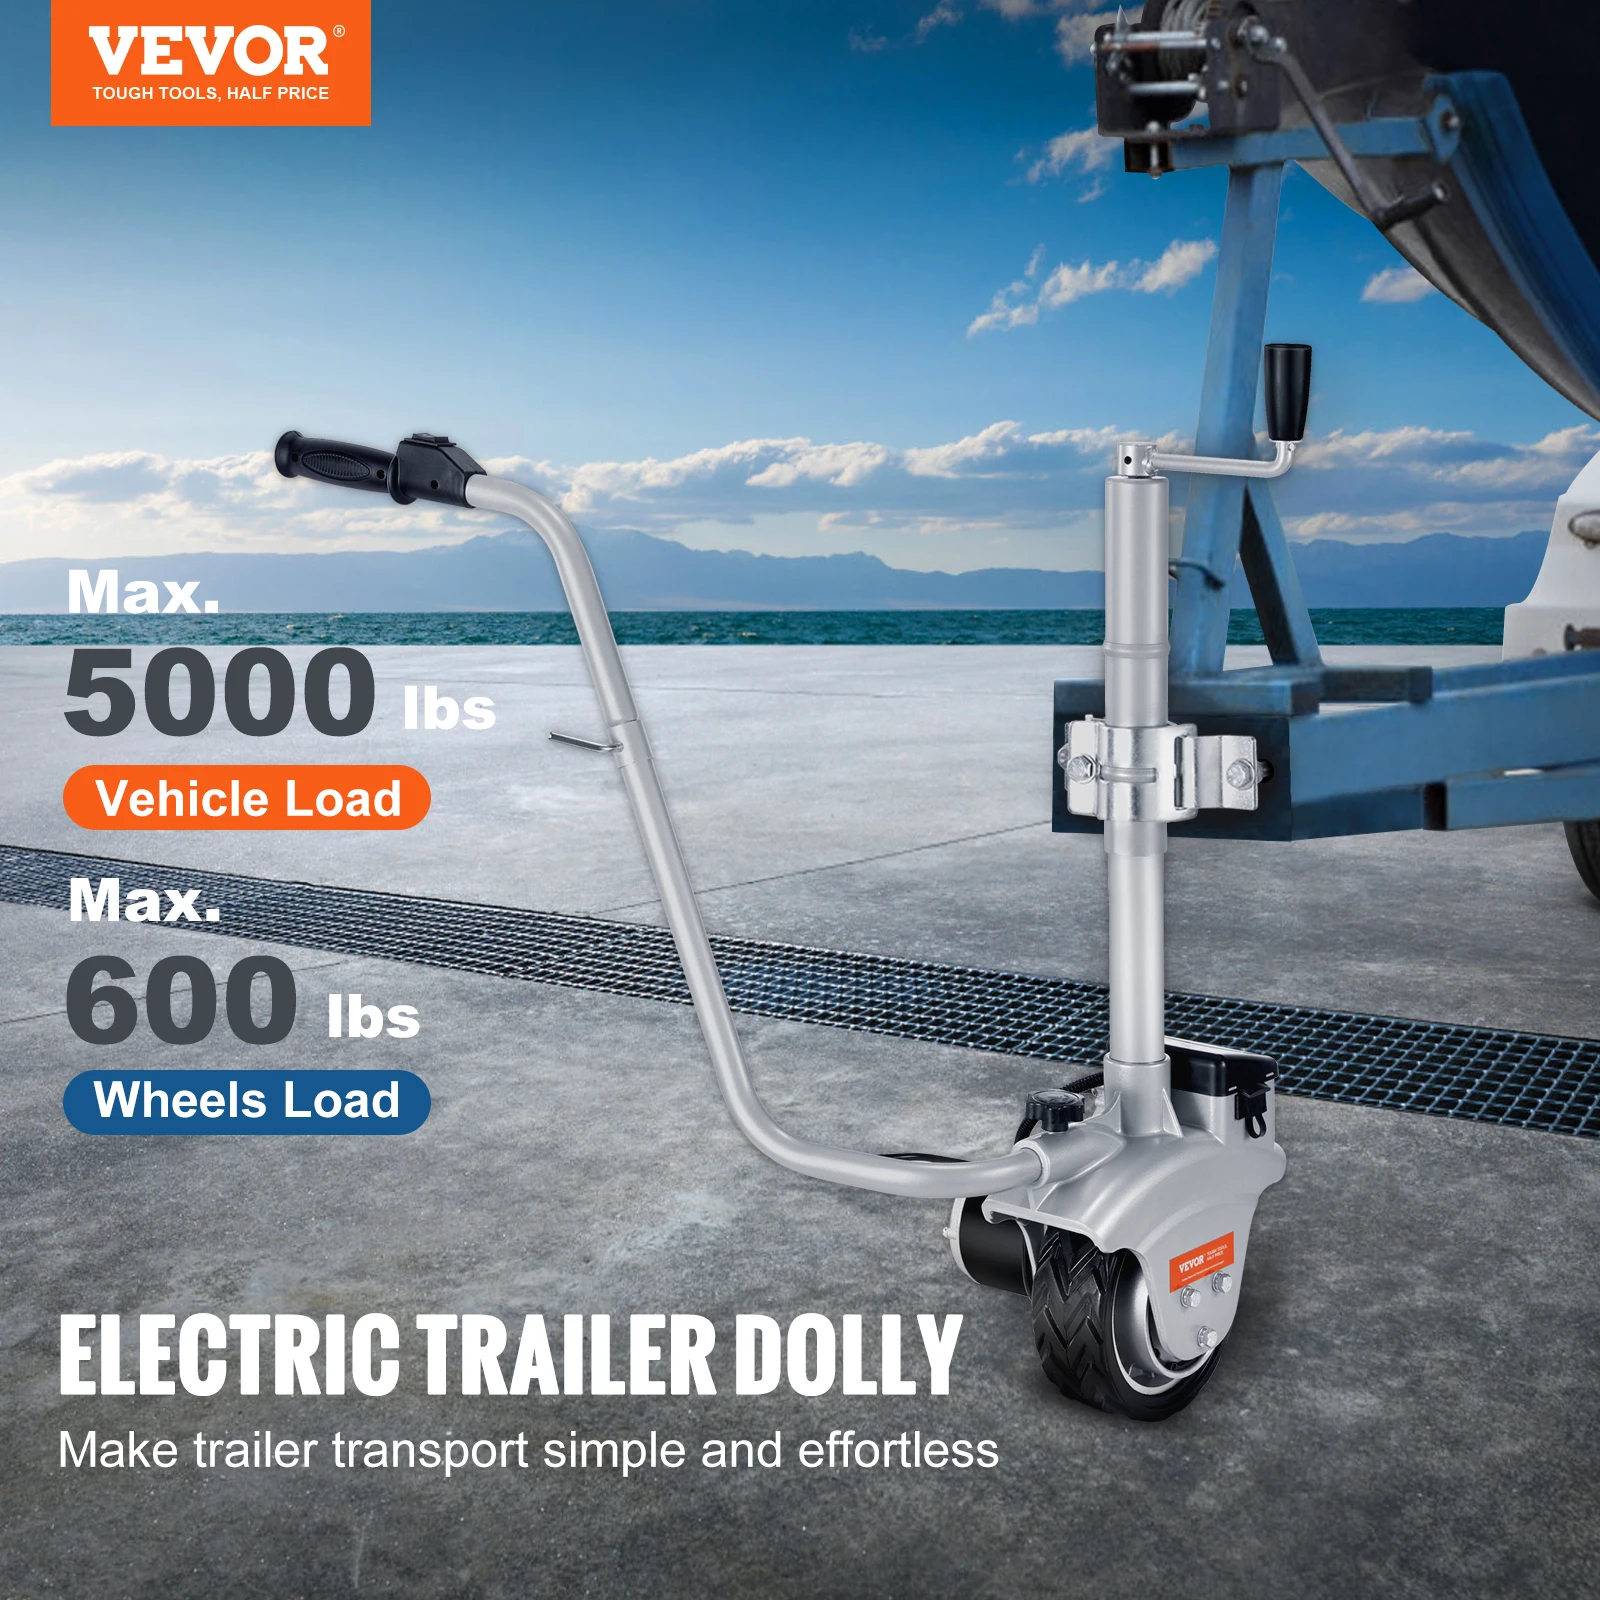 Elektryczna przyczepa wózek wevor o udźwigu 5000 funtów 350W 12V koło kopiujące przyczepy z prędkością 22 stóp/min dla łodzi przyczepy